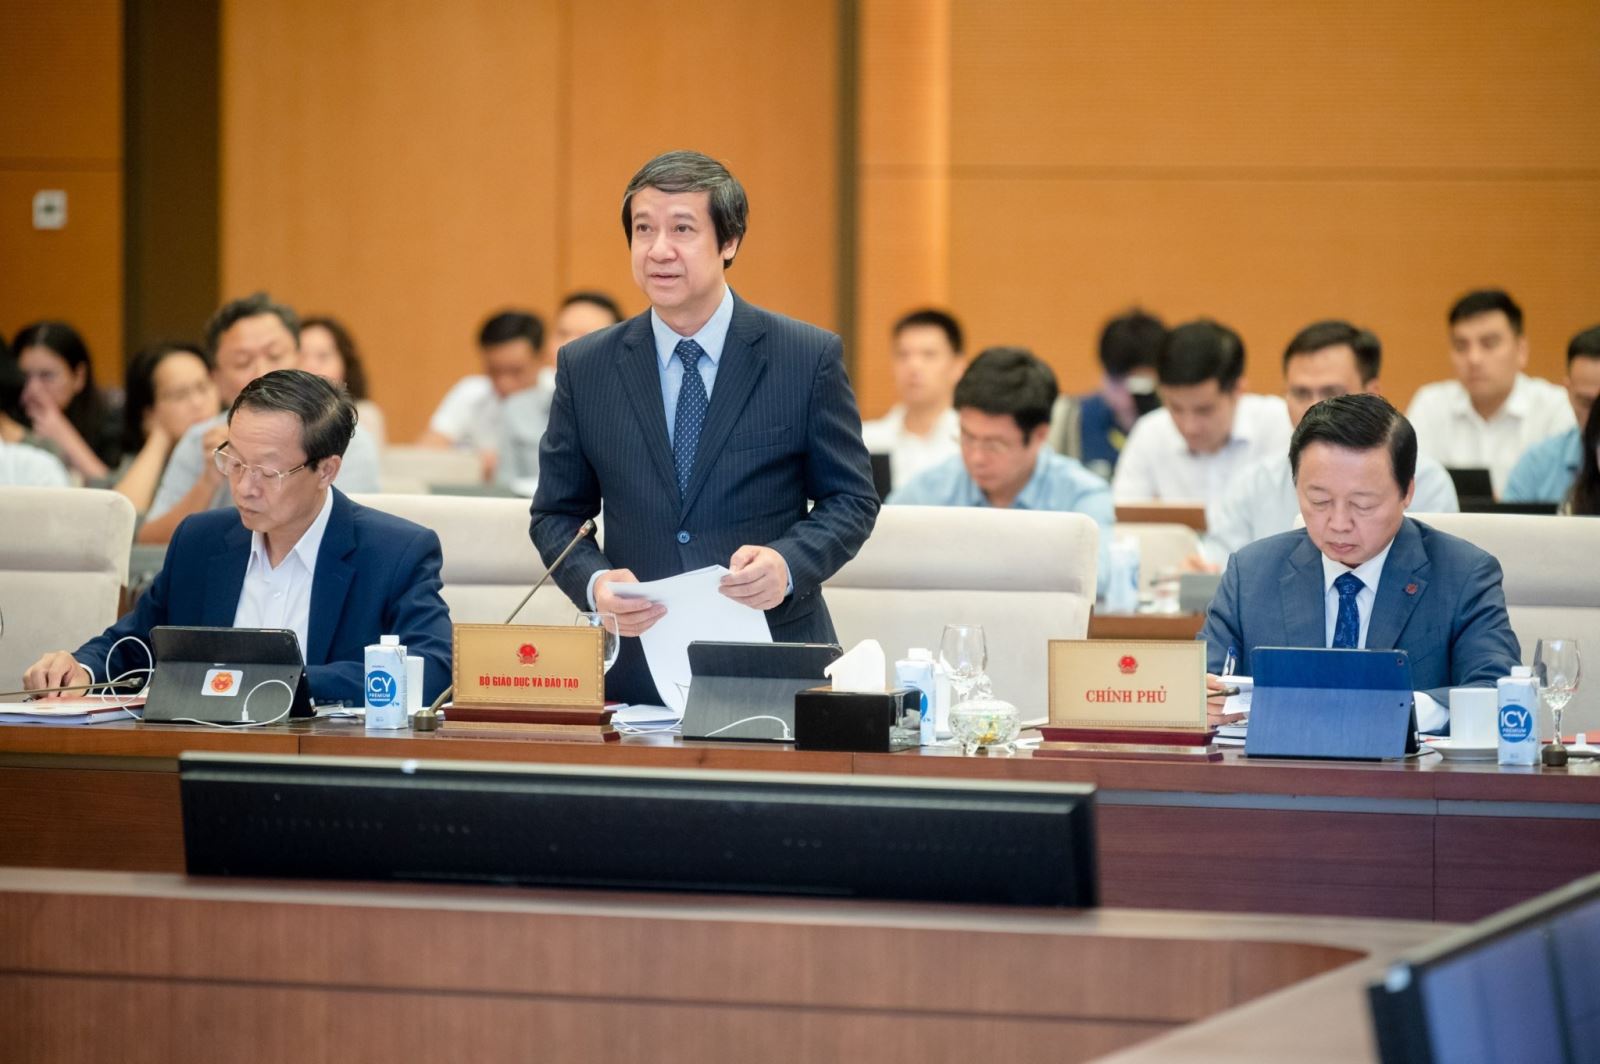  Bộ trưởng Bộ Giáo dục và Đào tạo Nguyễn Kim Sơn phát biểu tại Phiên họp.